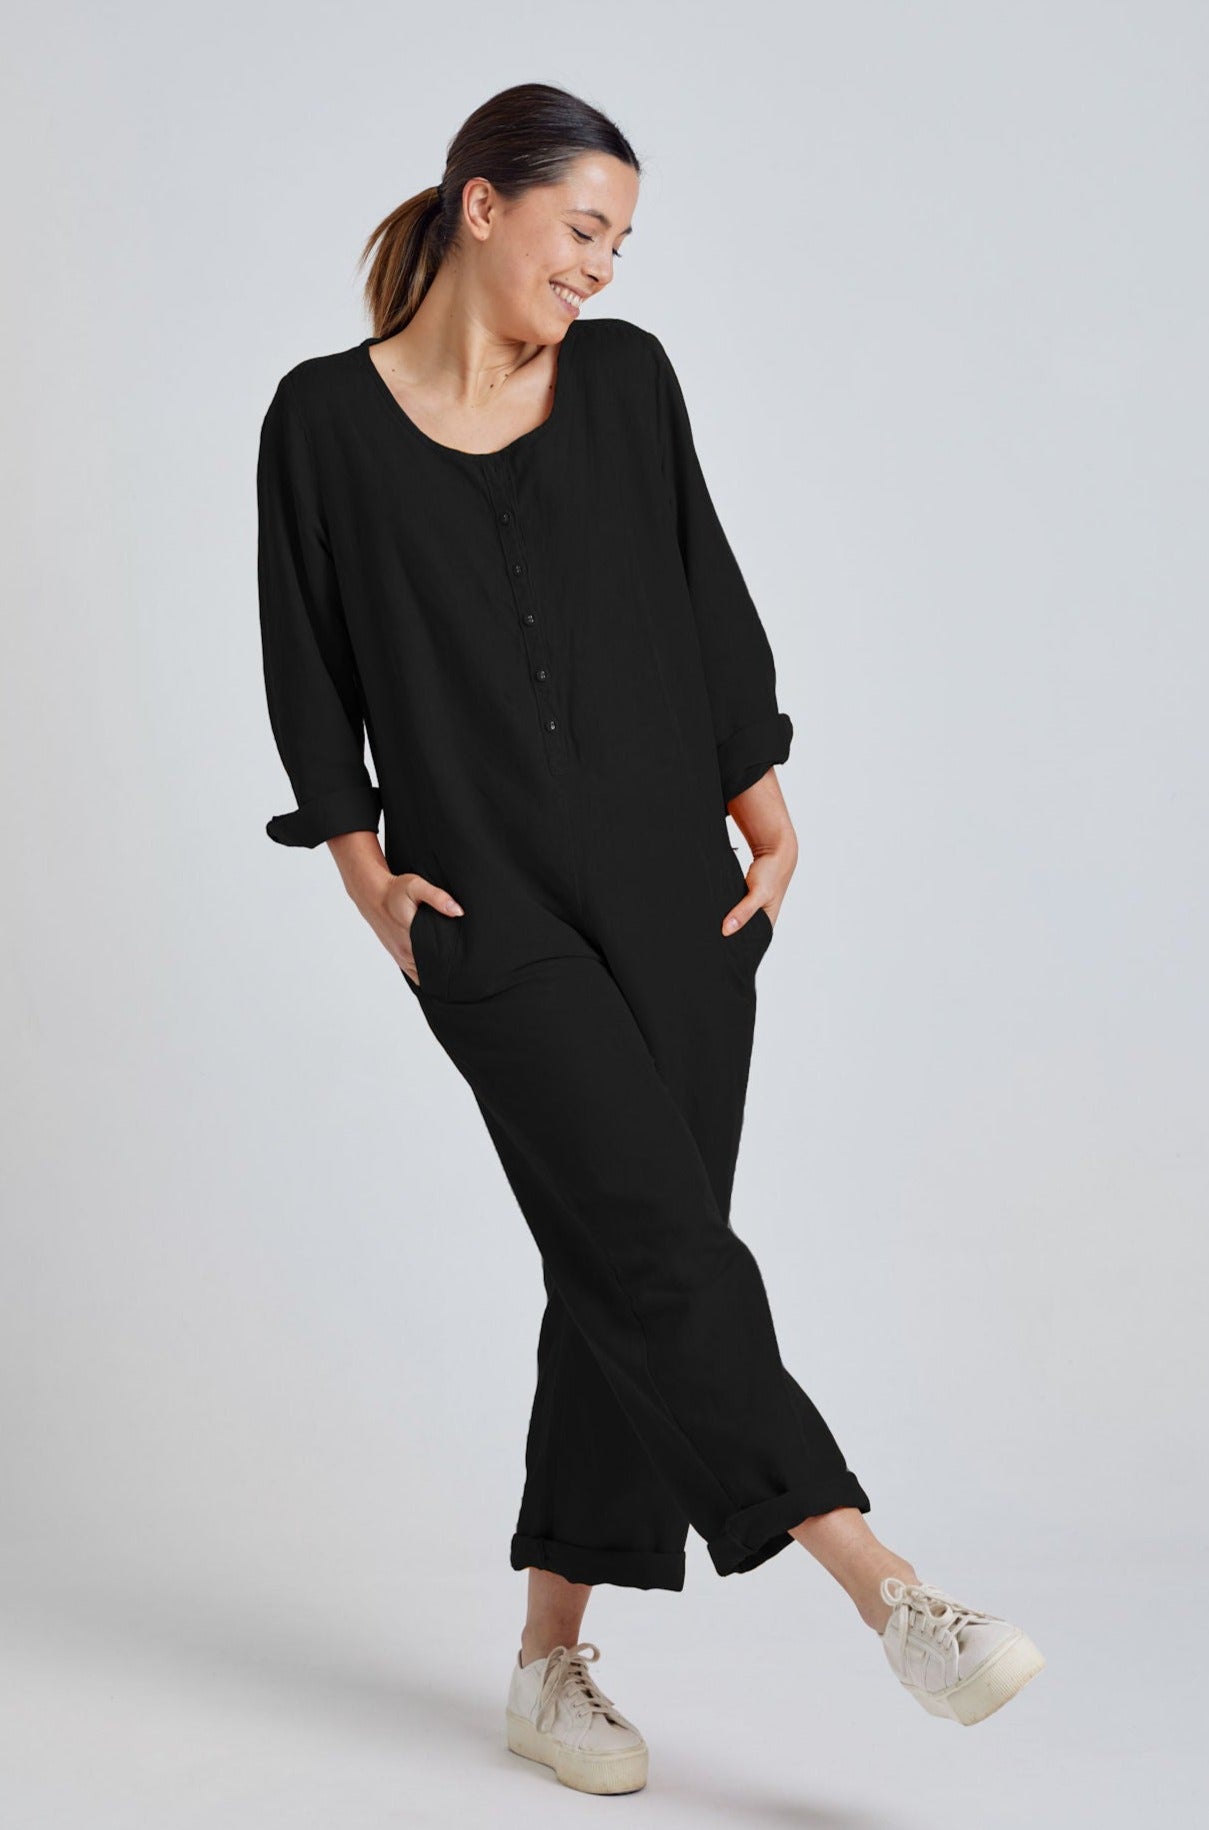 CLARA black - GOTS Organic Cotton Jumpsuit by Flax & Loom, L